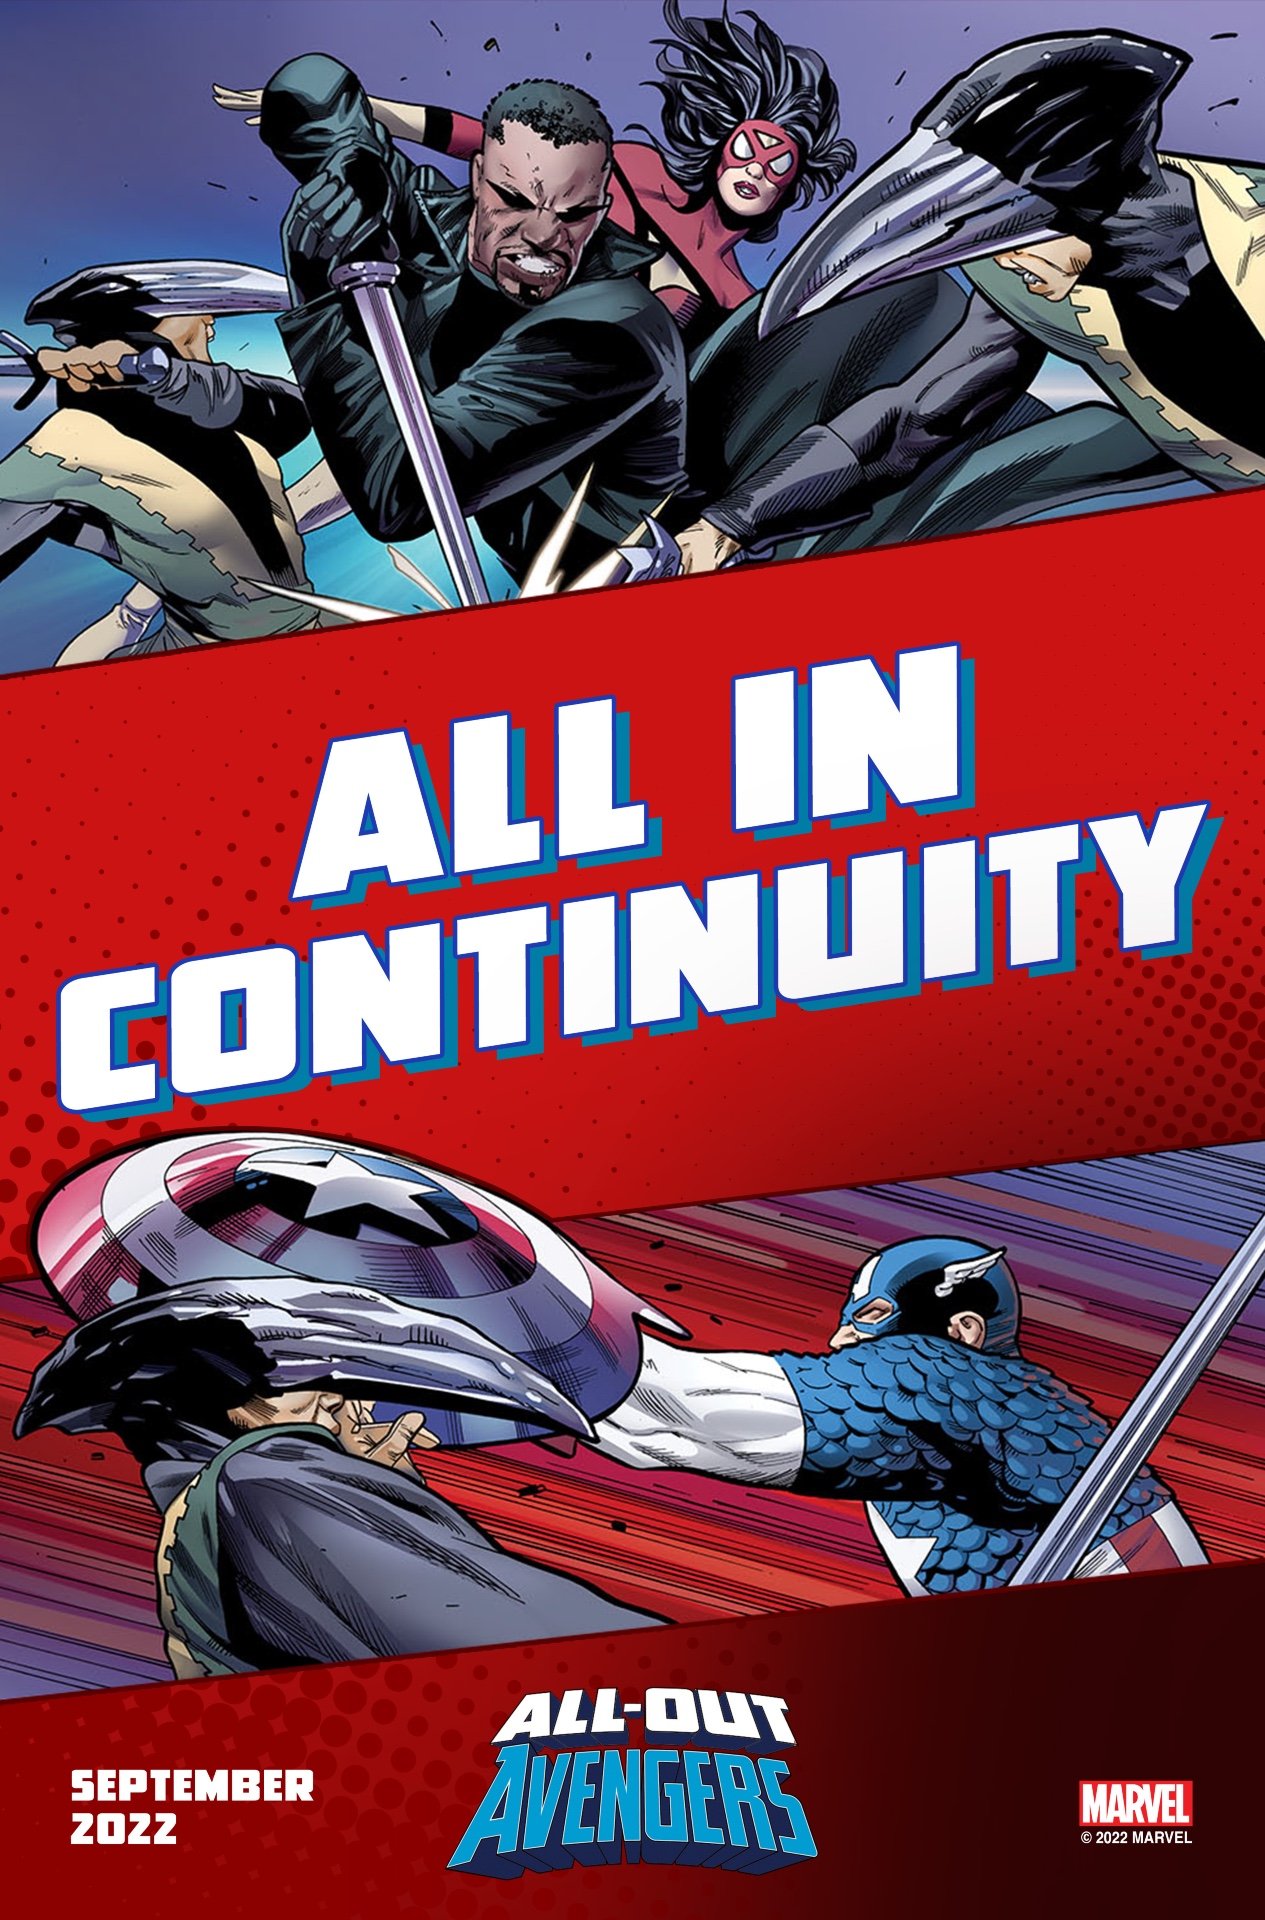 Immagine promozionale di All-Out Avengers di Greg Land